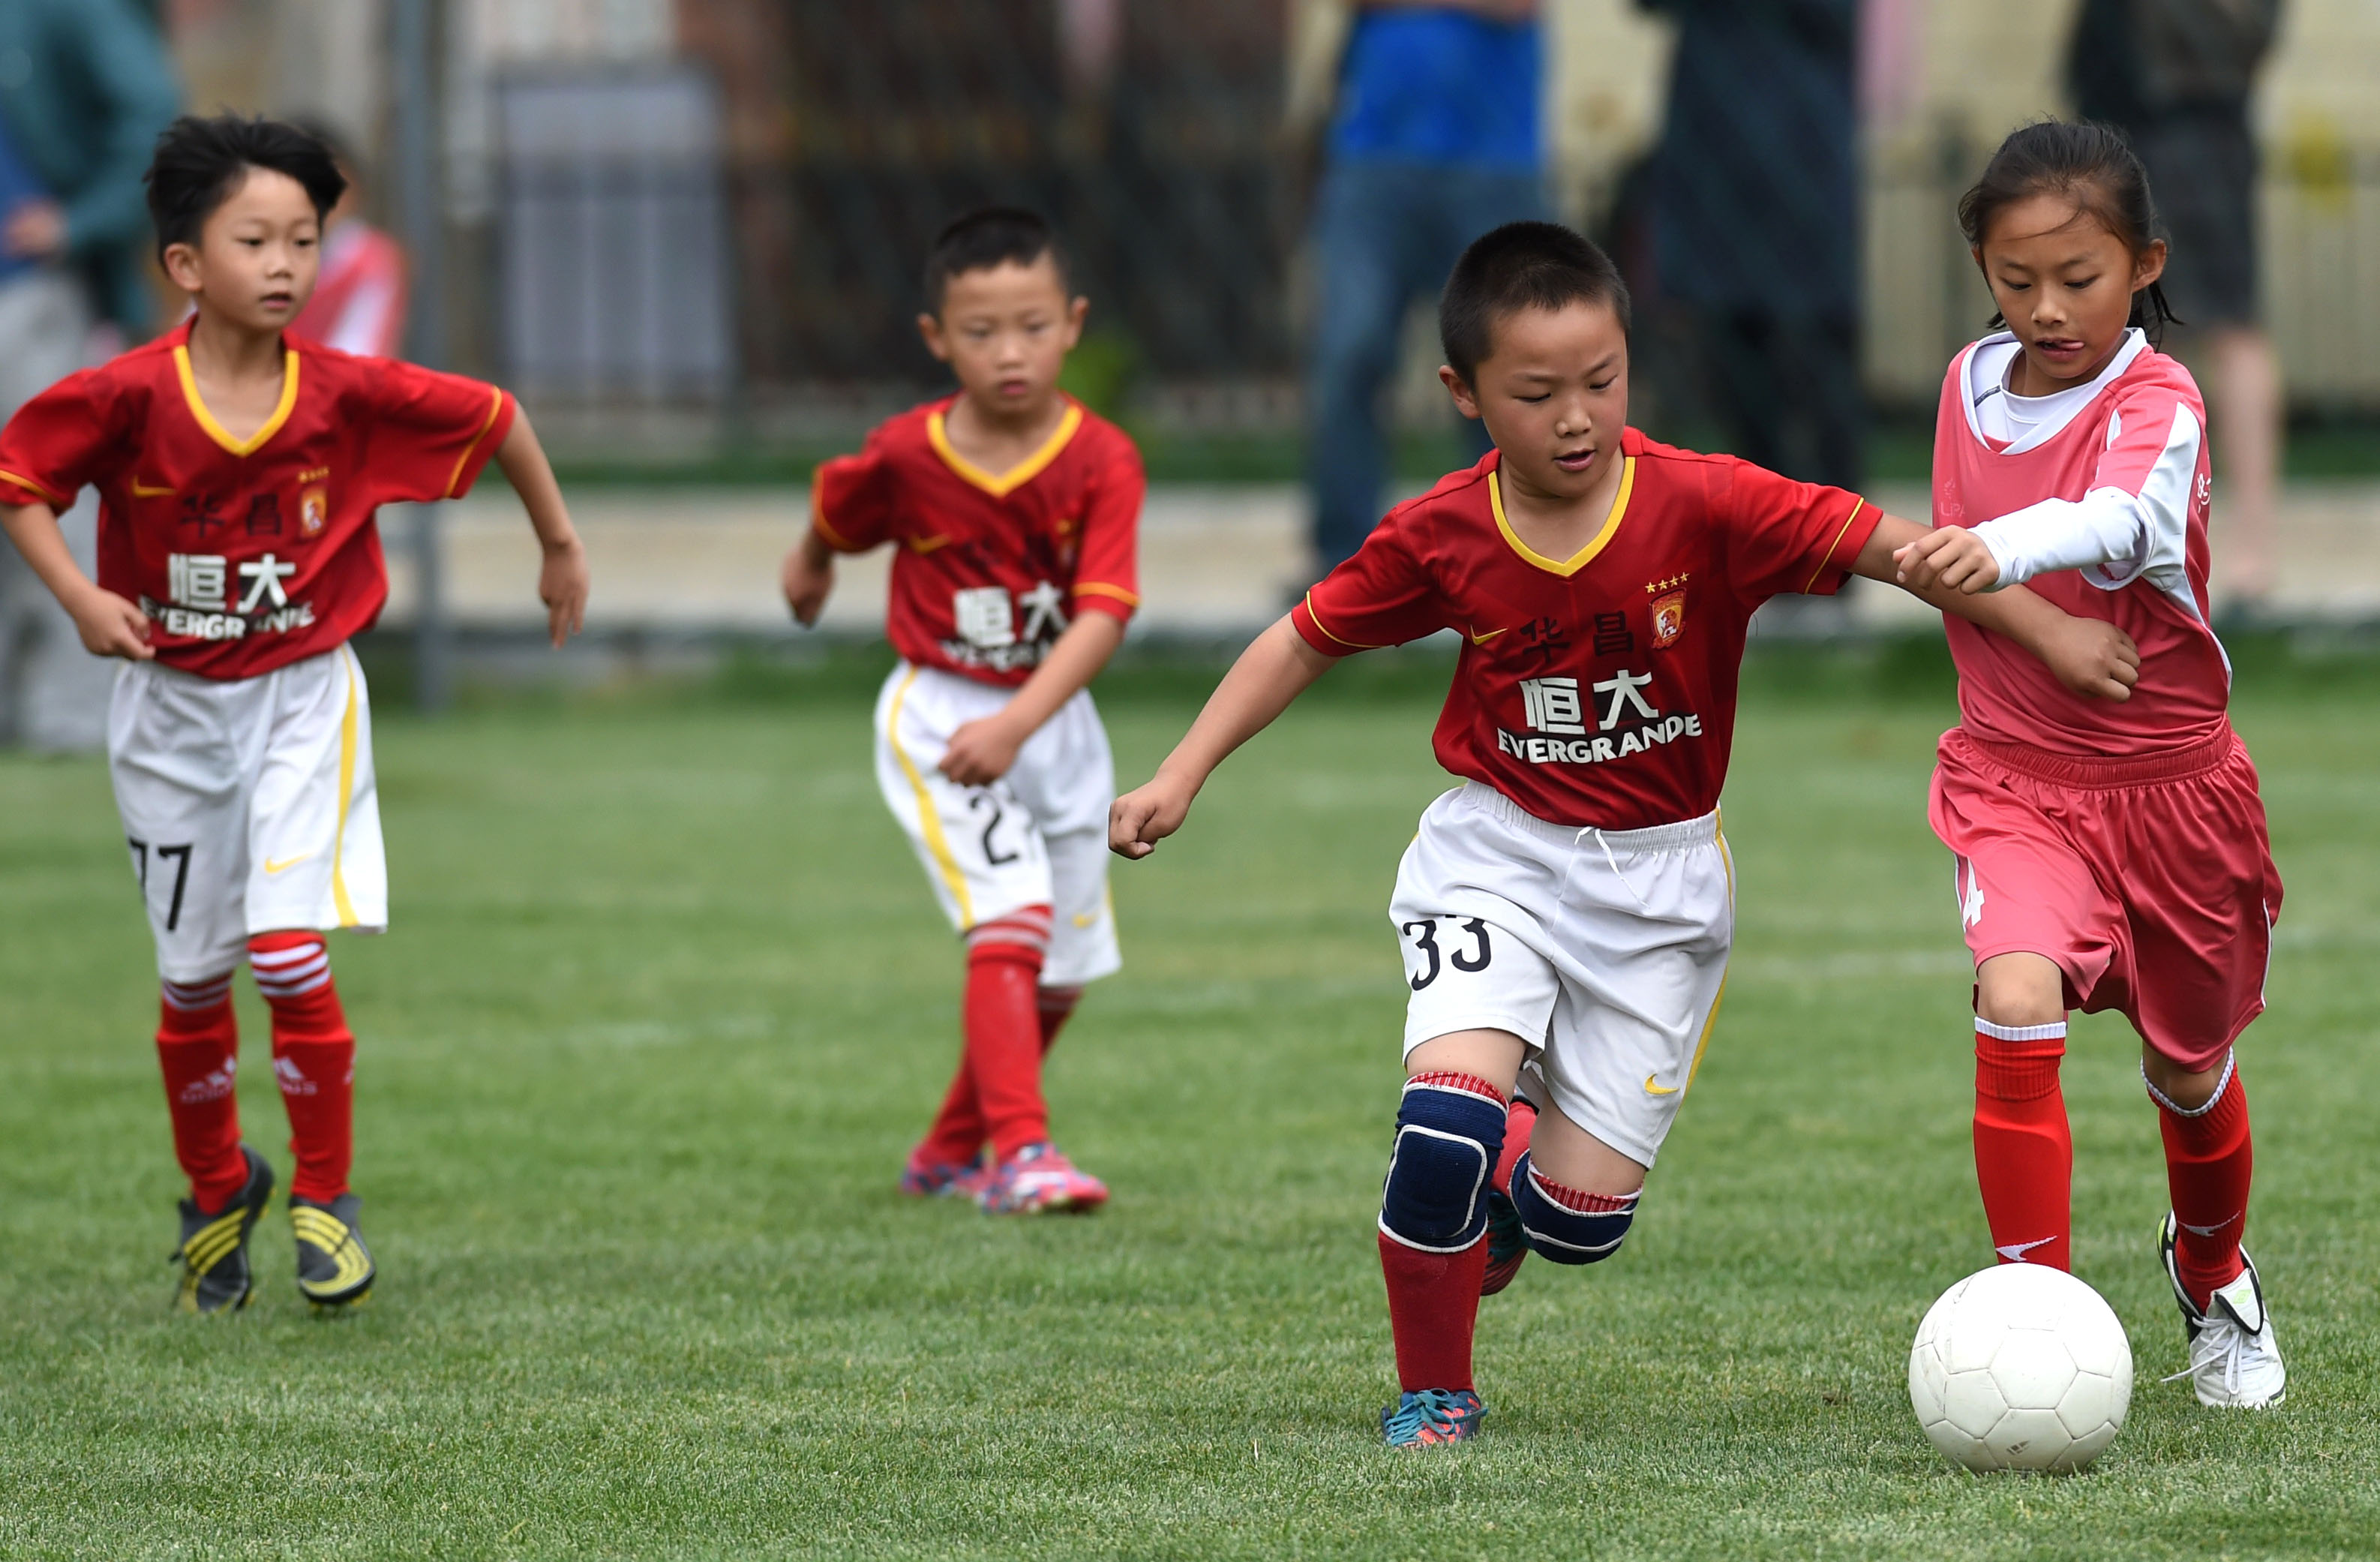 年新益杯亚洲展望昆明城市青少年足球联赛今